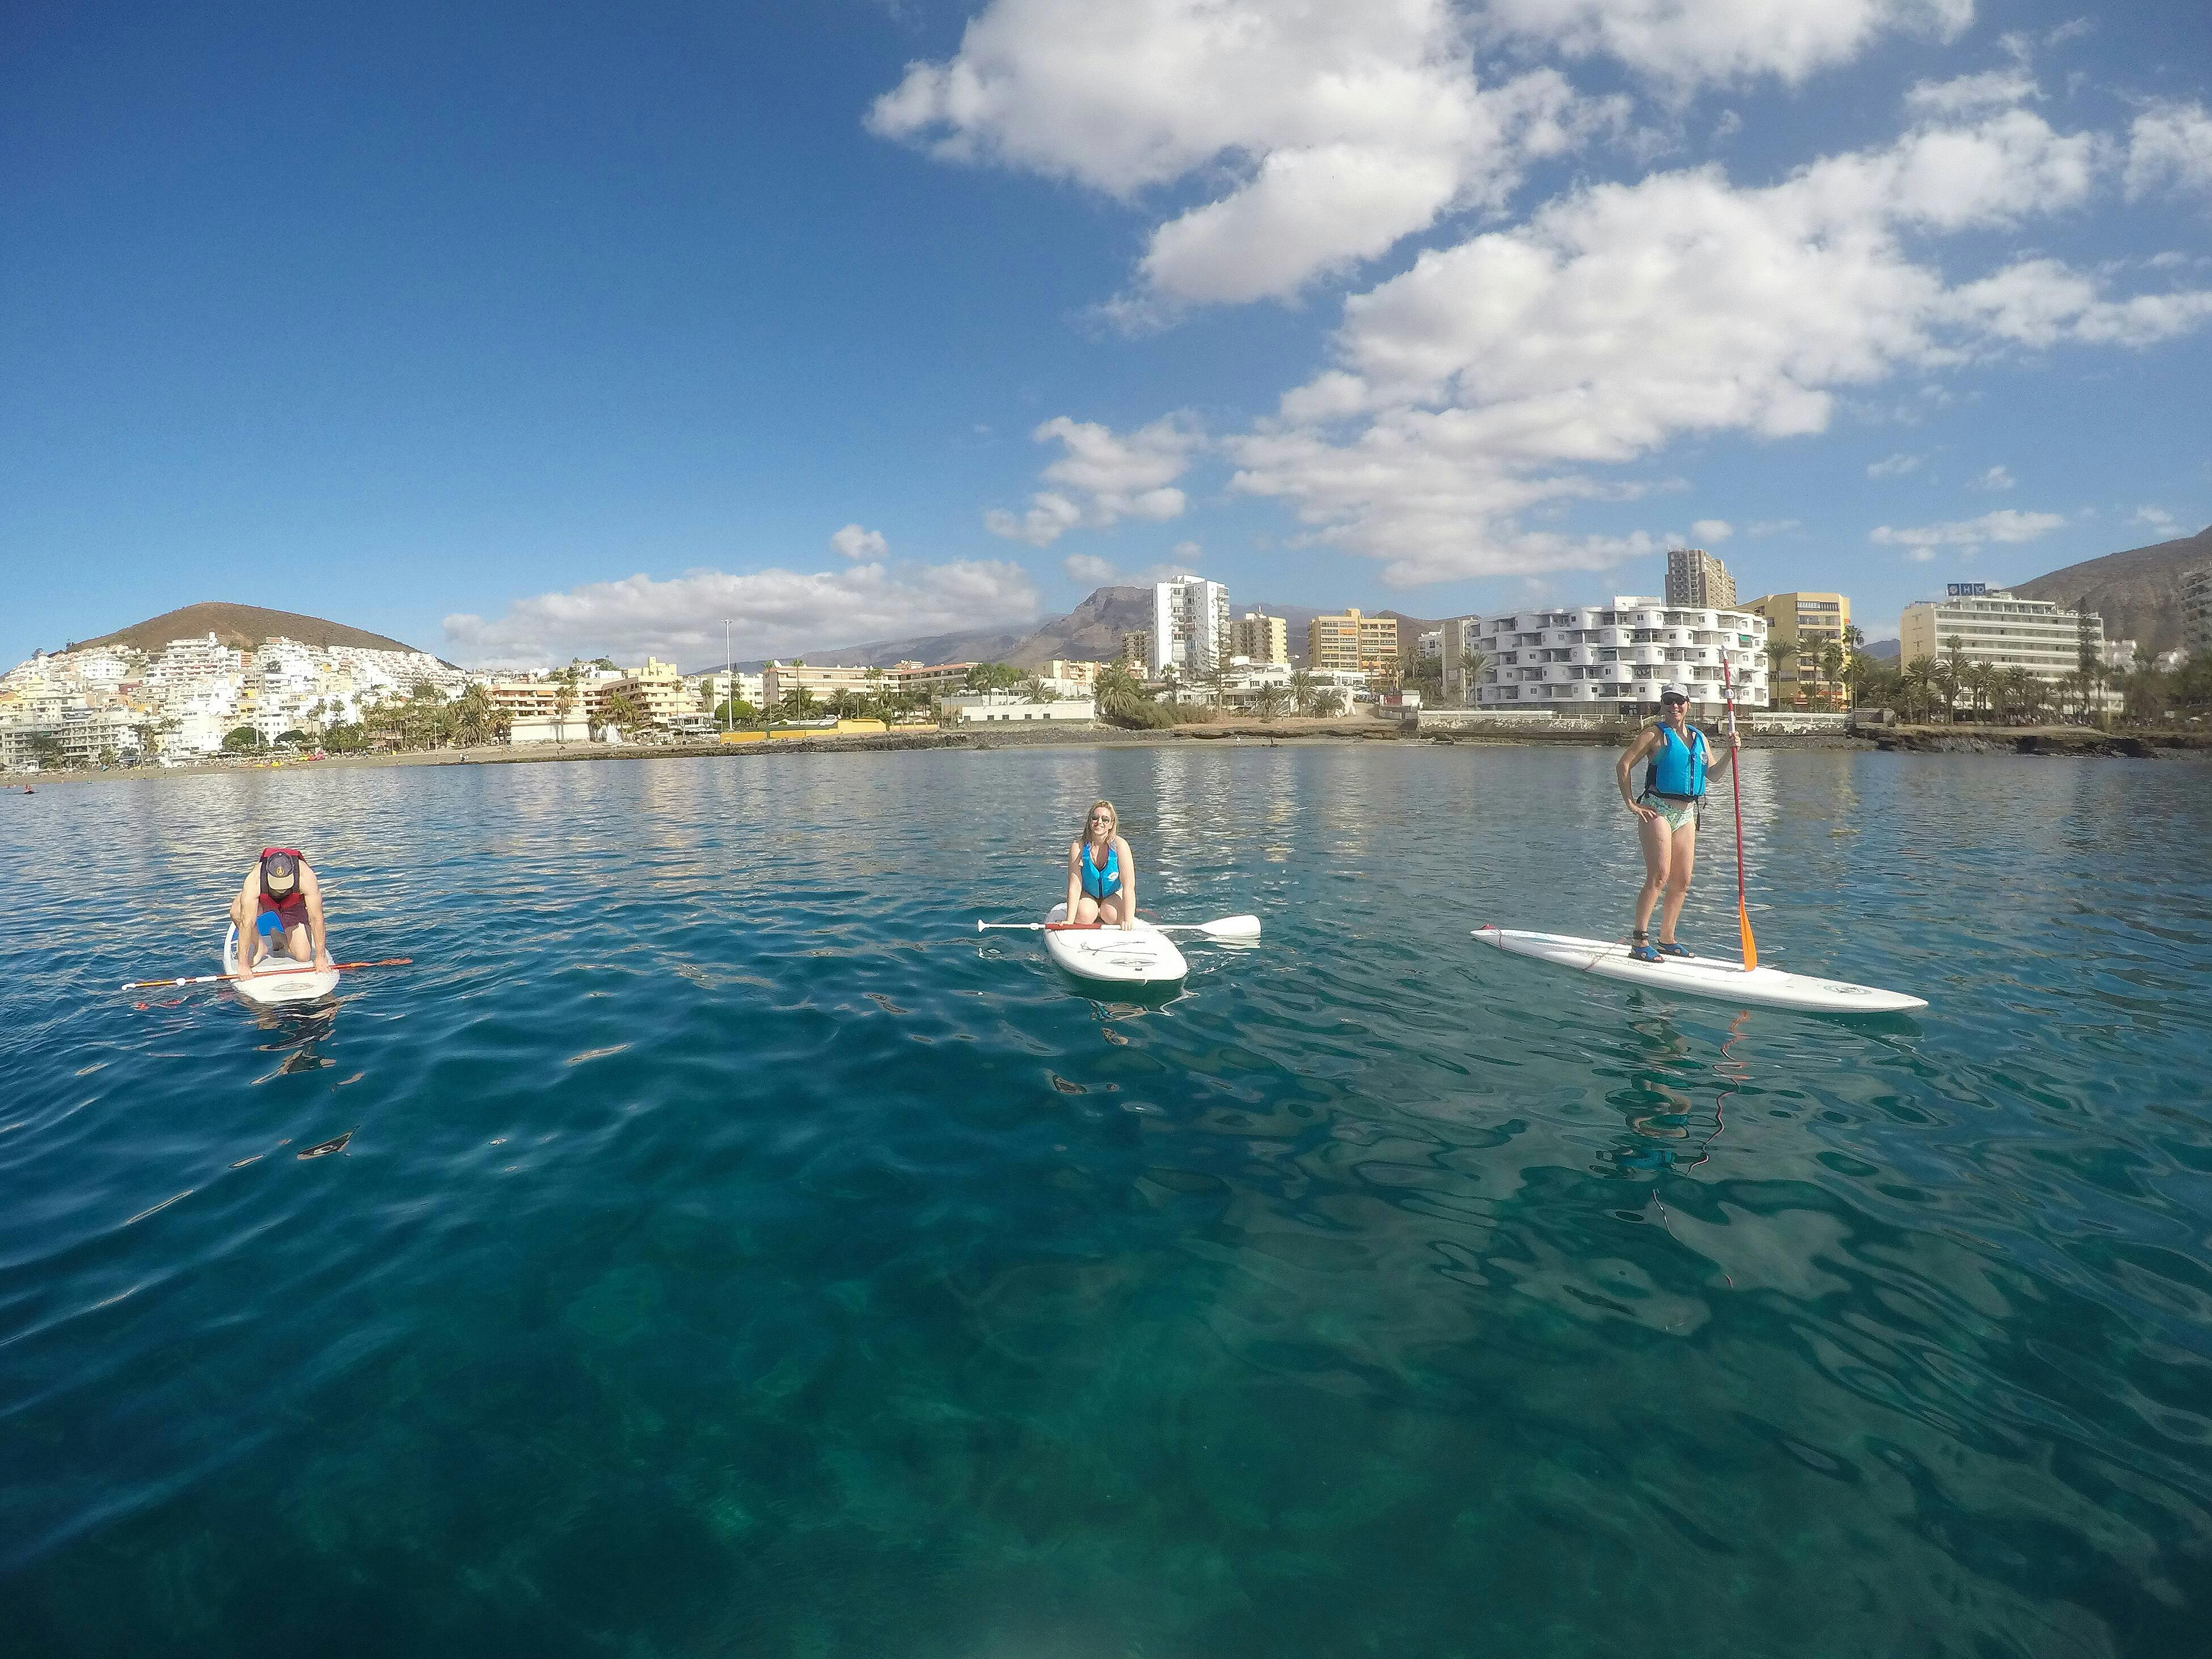 Lezione privata di stand-up paddle a Tenerife